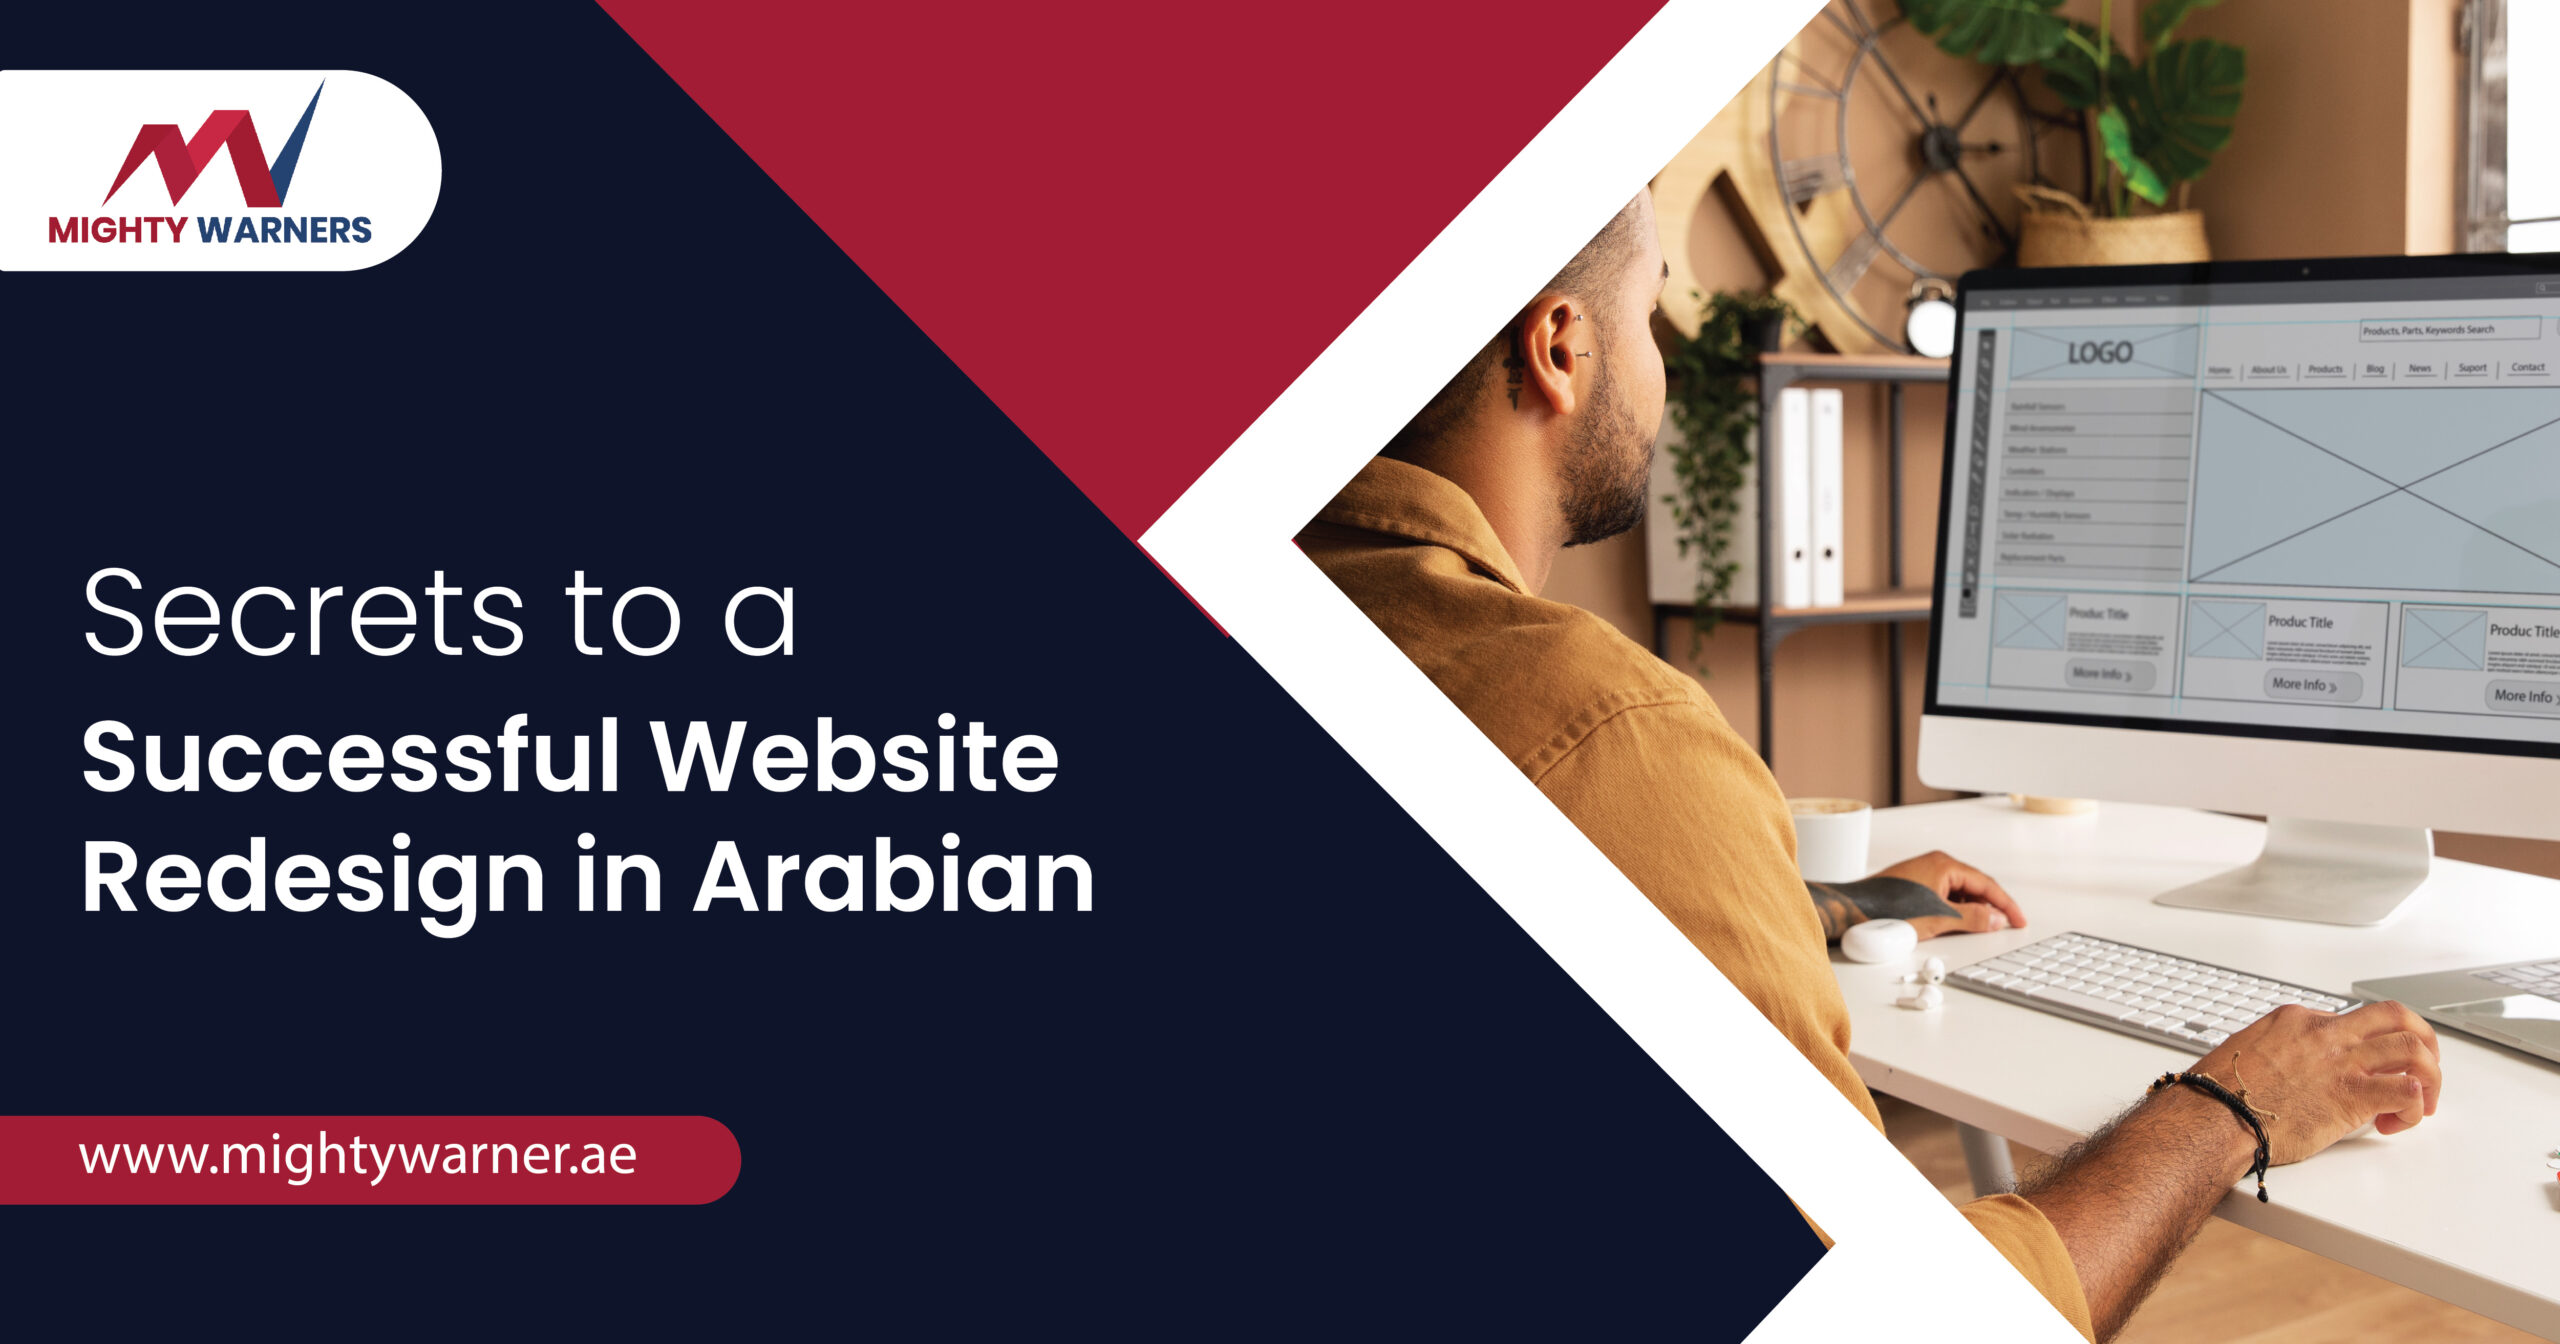 Secrets to a Successful Website Redesign in Arabian